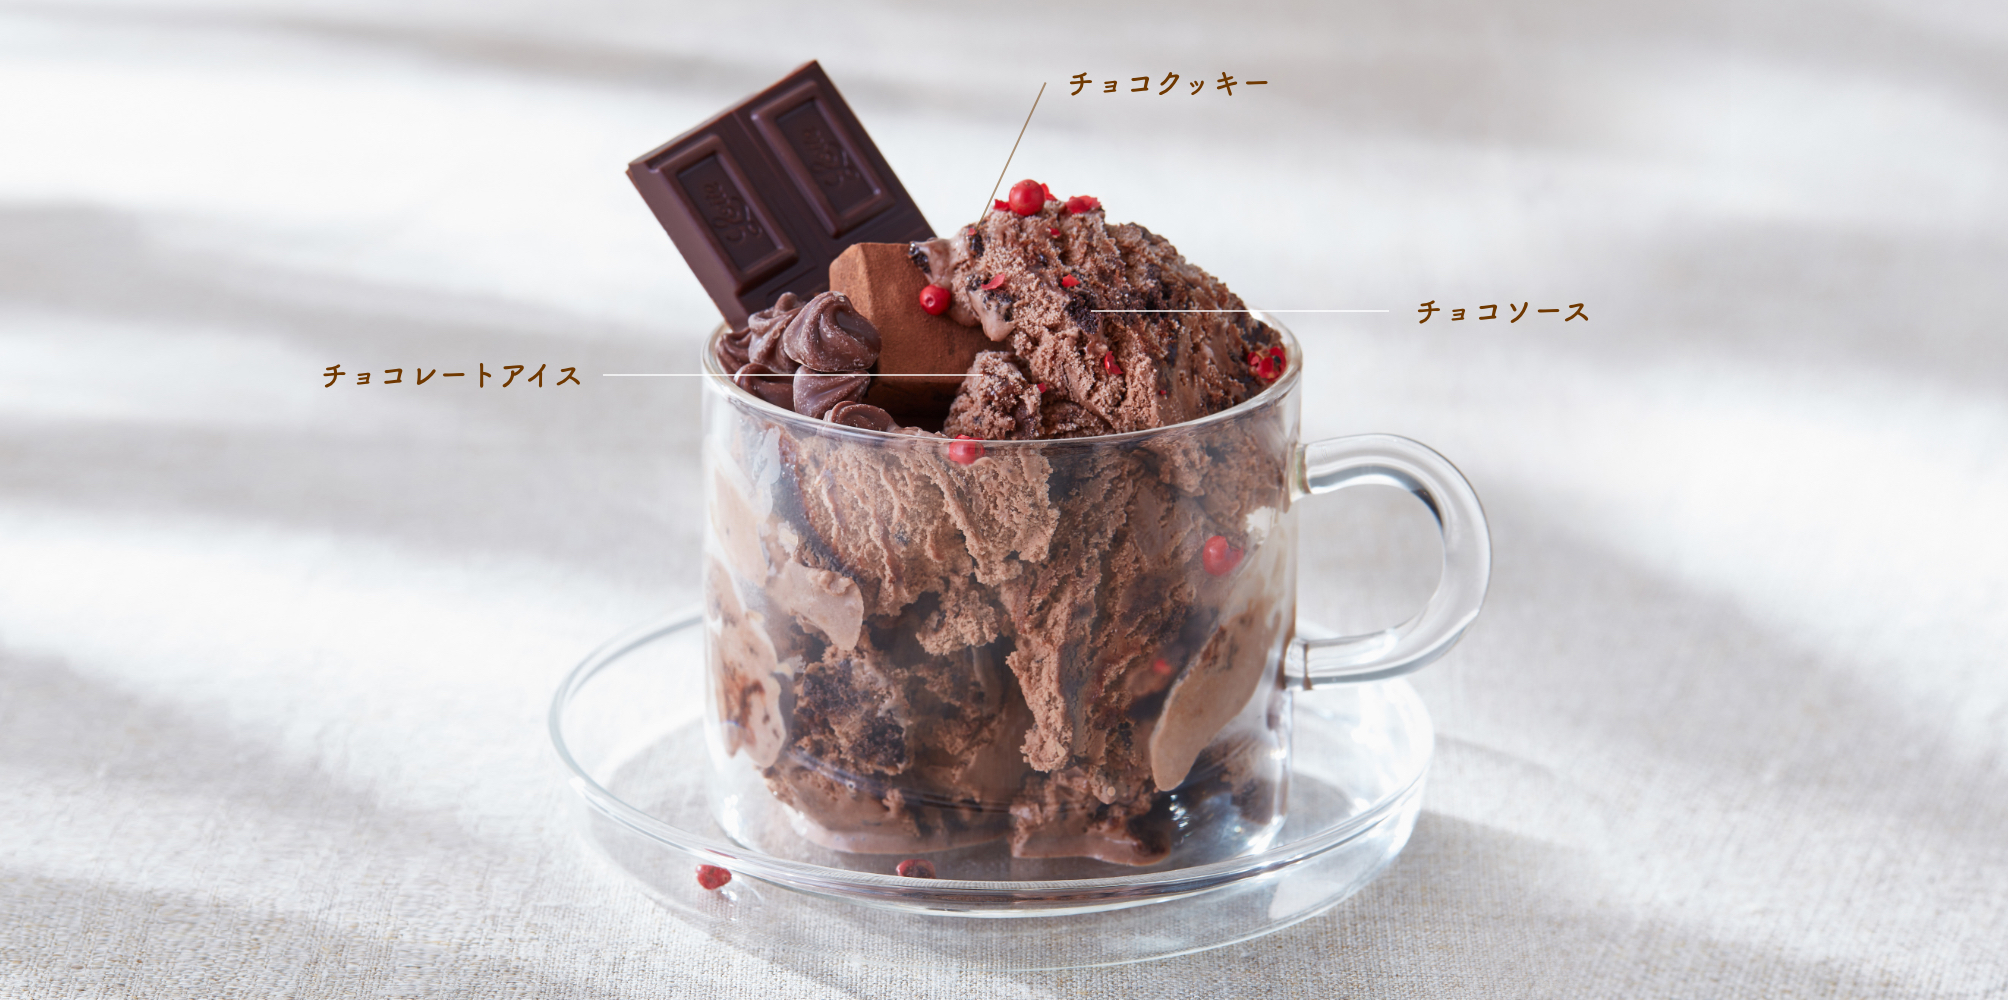 チョコクッキー、チョコレートアイス、チョコソースの混じったパステルマーブルイメージ